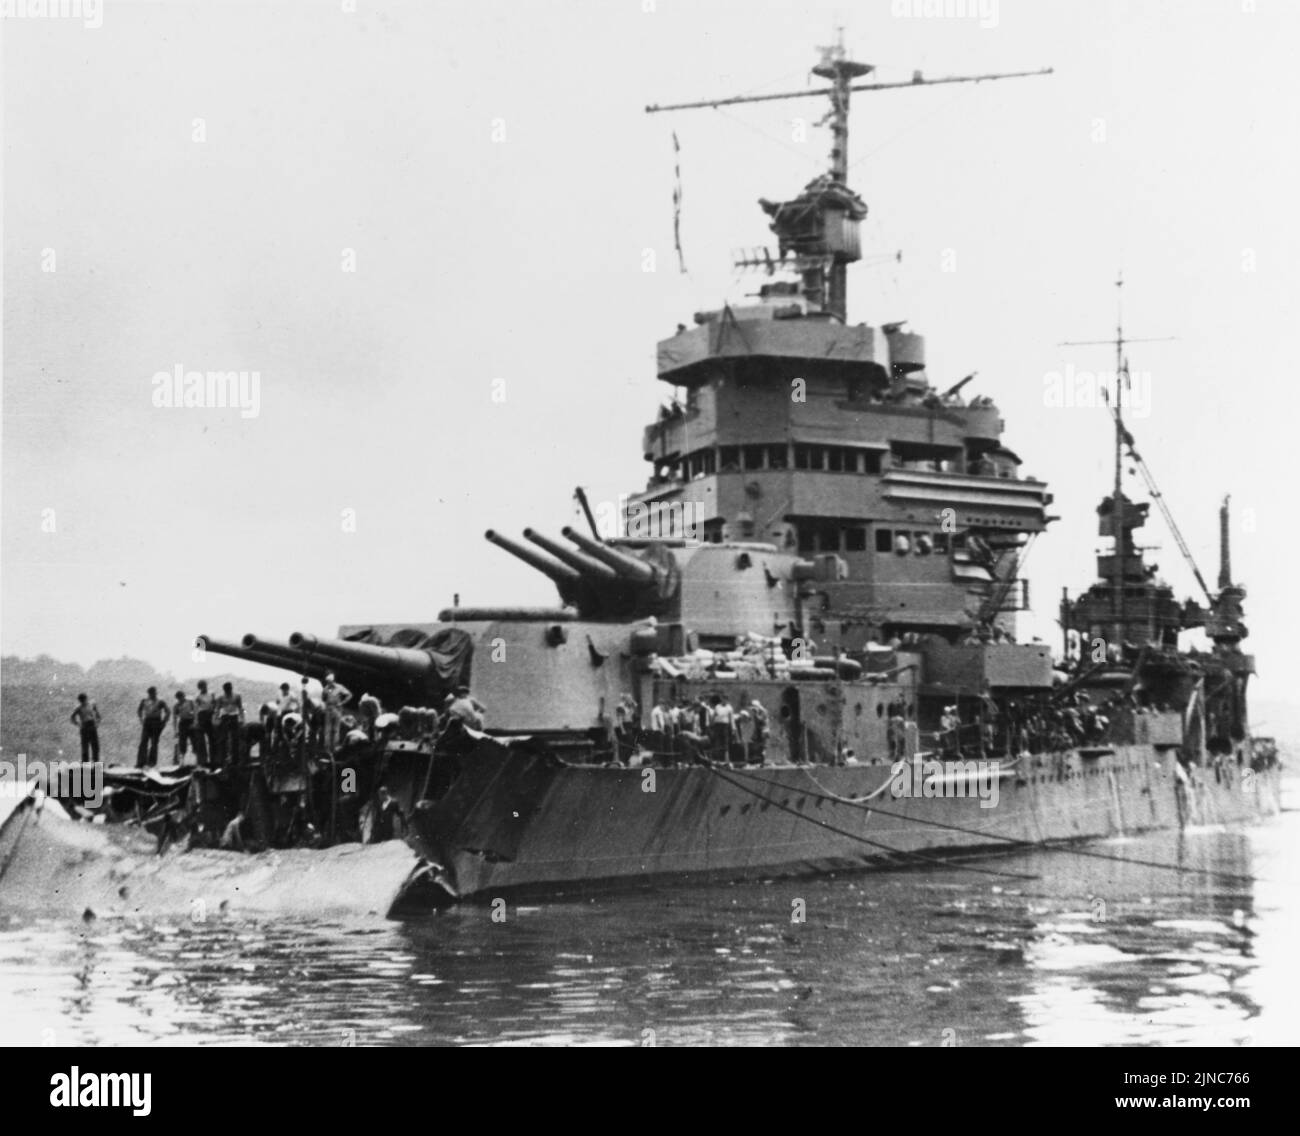 Le croiseur lourd USS Minneapolis (CA-36) de la Marine américaine à Tulagi avec torpedo endommagé reçu dans la bataille de Tassafaronga, la nuit précédente. La photographie a été prise le 1 décembre 1942, alors que les travaux commençaient à couper l'épave de son arc. Banque D'Images